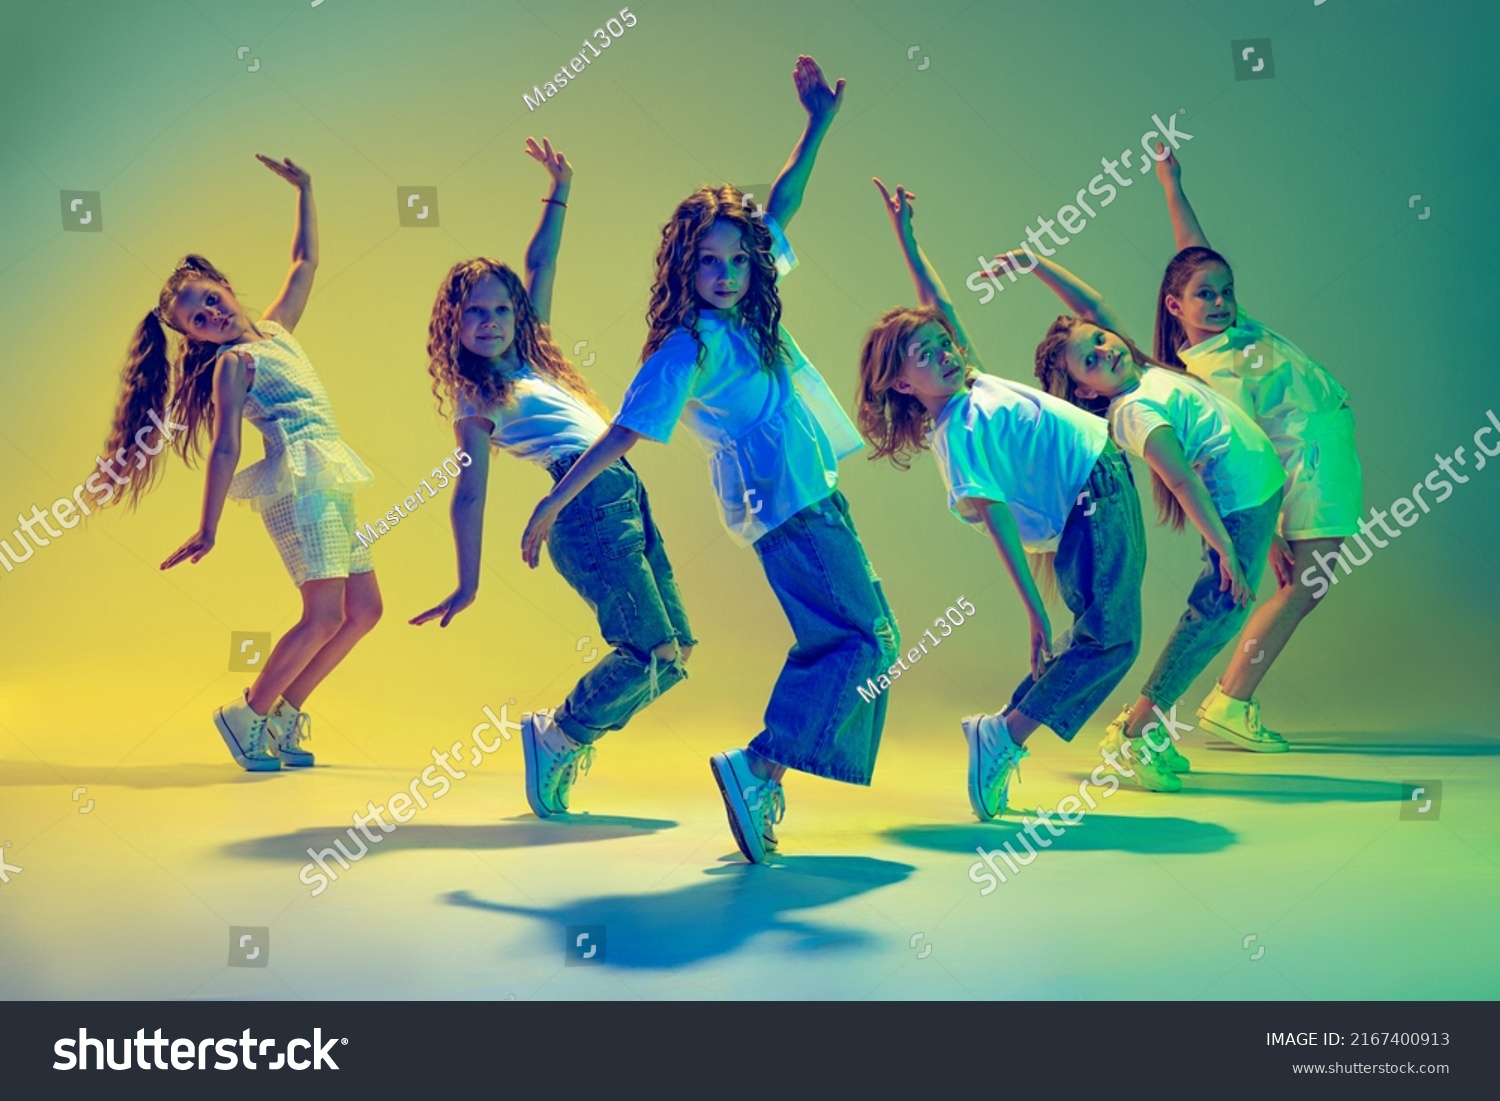 Fröhliche Kinder tanzen. Gruppe von Kindern, kleine Mädchen in sportiven, lockeren Kleidung tanzen in Choreografieklasse einzeln auf grünem Hintergrund auf gelbem Neonlicht. Konzept von Musik, Mode, Kunst – Stockfoto